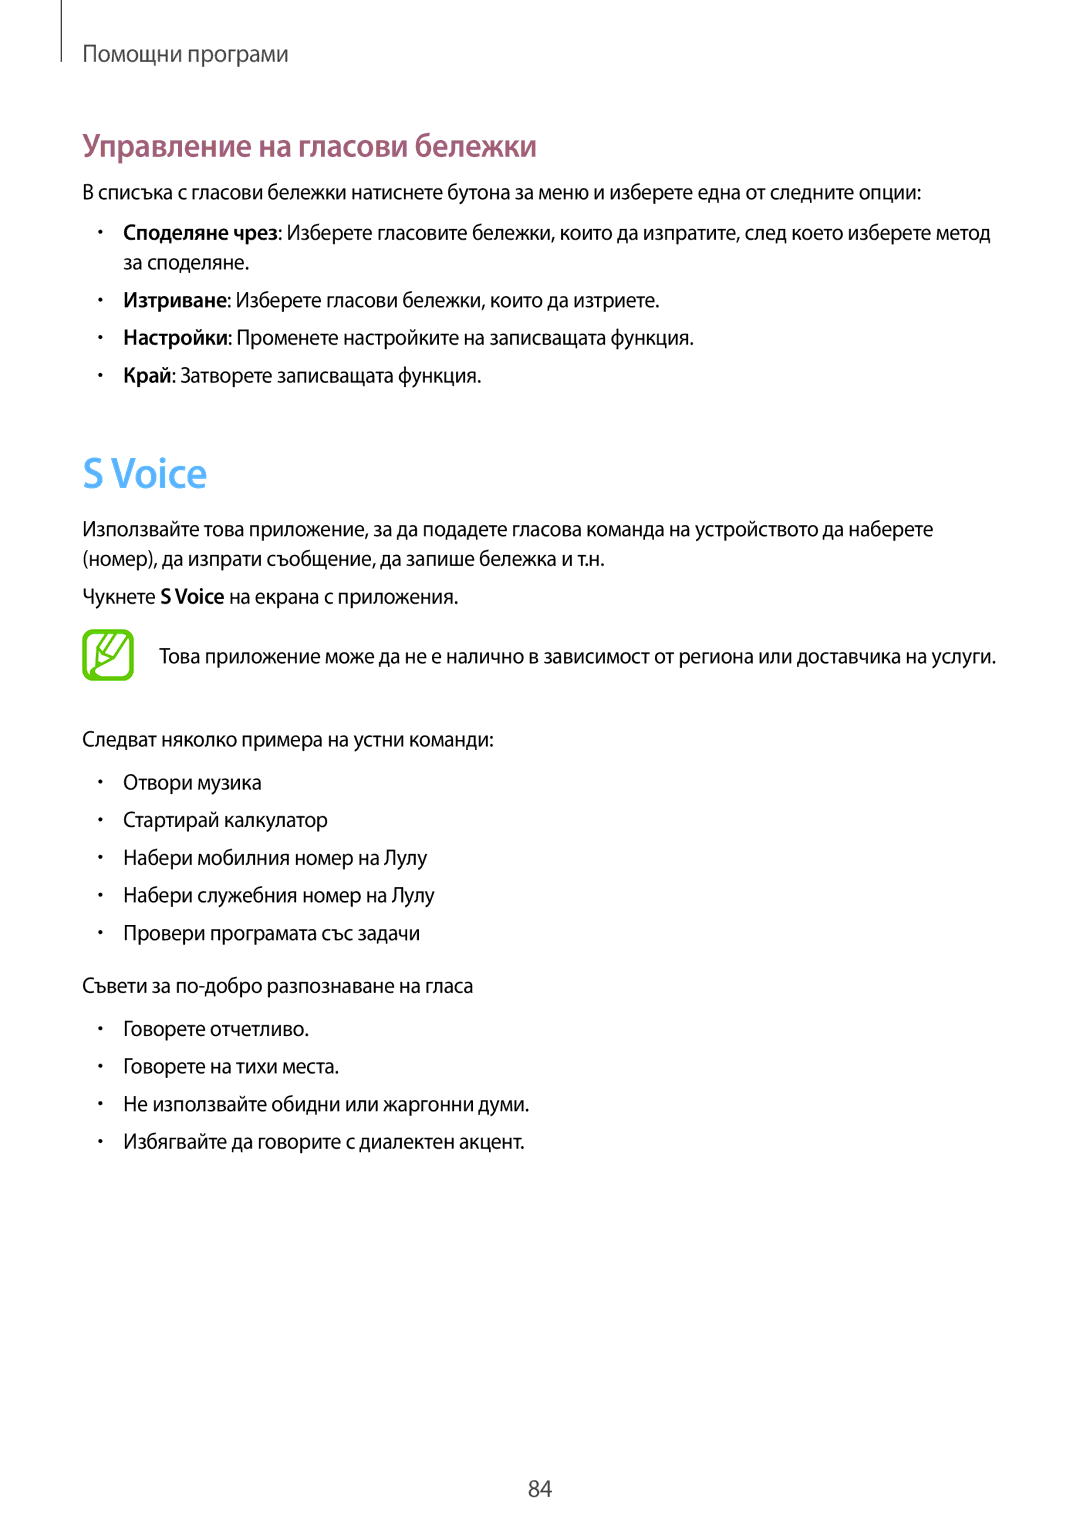 Samsung GT-S7710KRABGL, GT-S7710TAABGL manual Voice, Управление на гласови бележки 